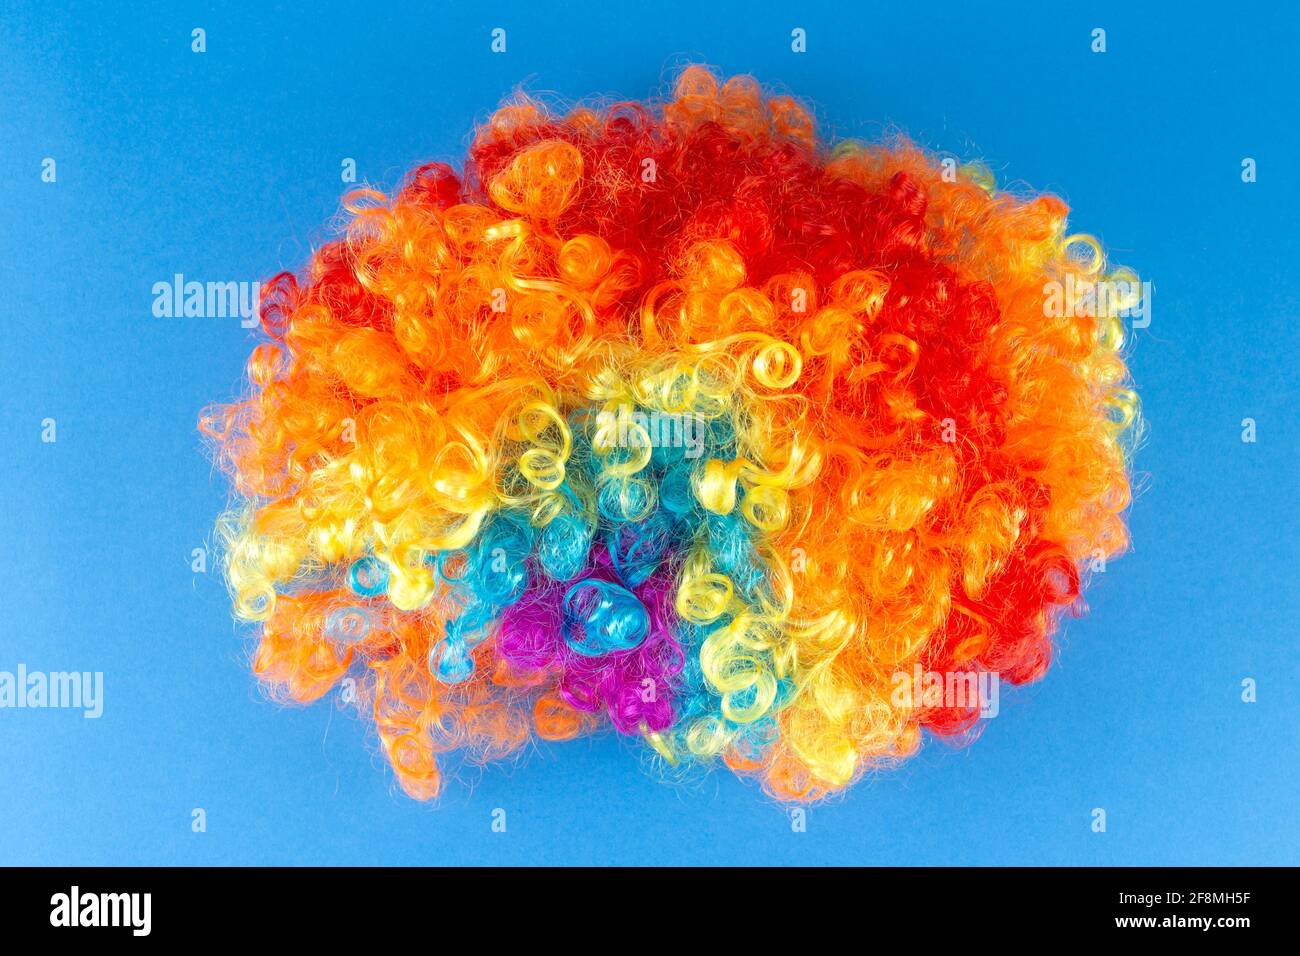 Lustige Party Konzept Regenbogen Clown Perücke flauschig Afro Synthetisch Cosplay Anime Fancy Wigs Festlichen Hintergrund Stockfoto